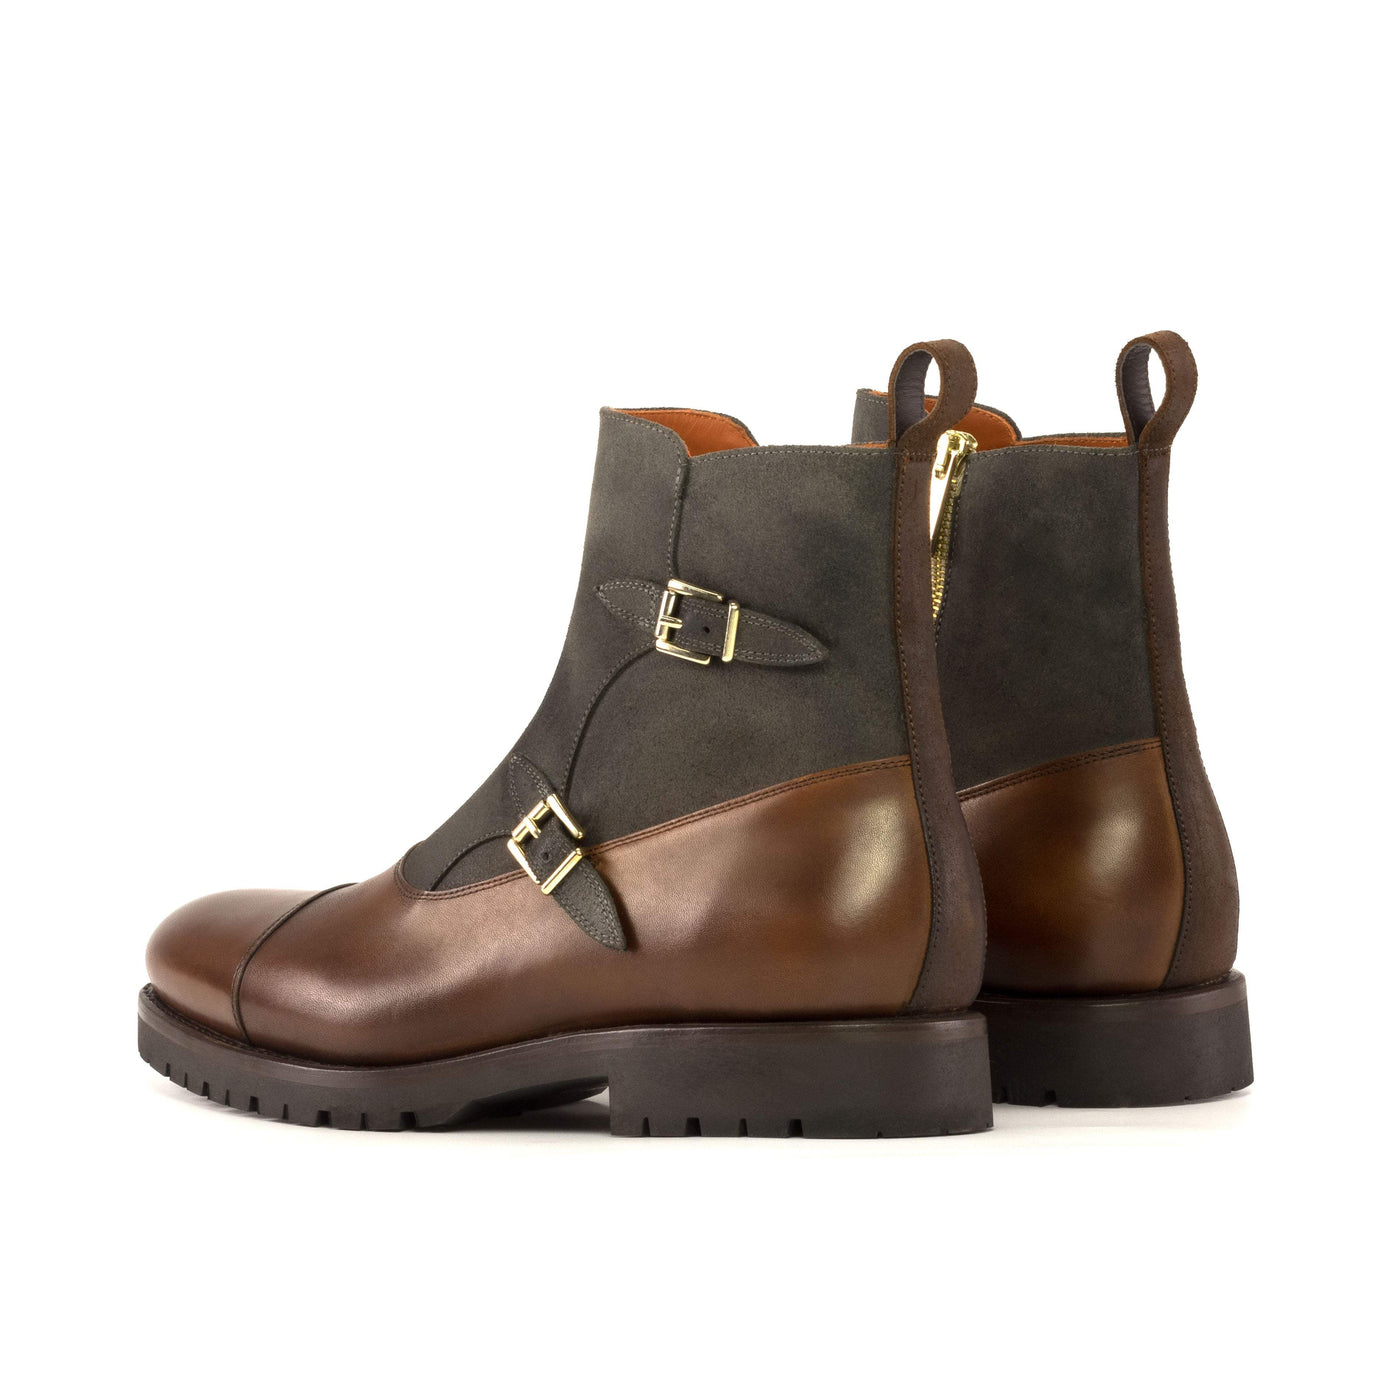 Men's Octavian Buckle Boots Leather Goodyear Welt Brown 5431 4- MERRIMIUM